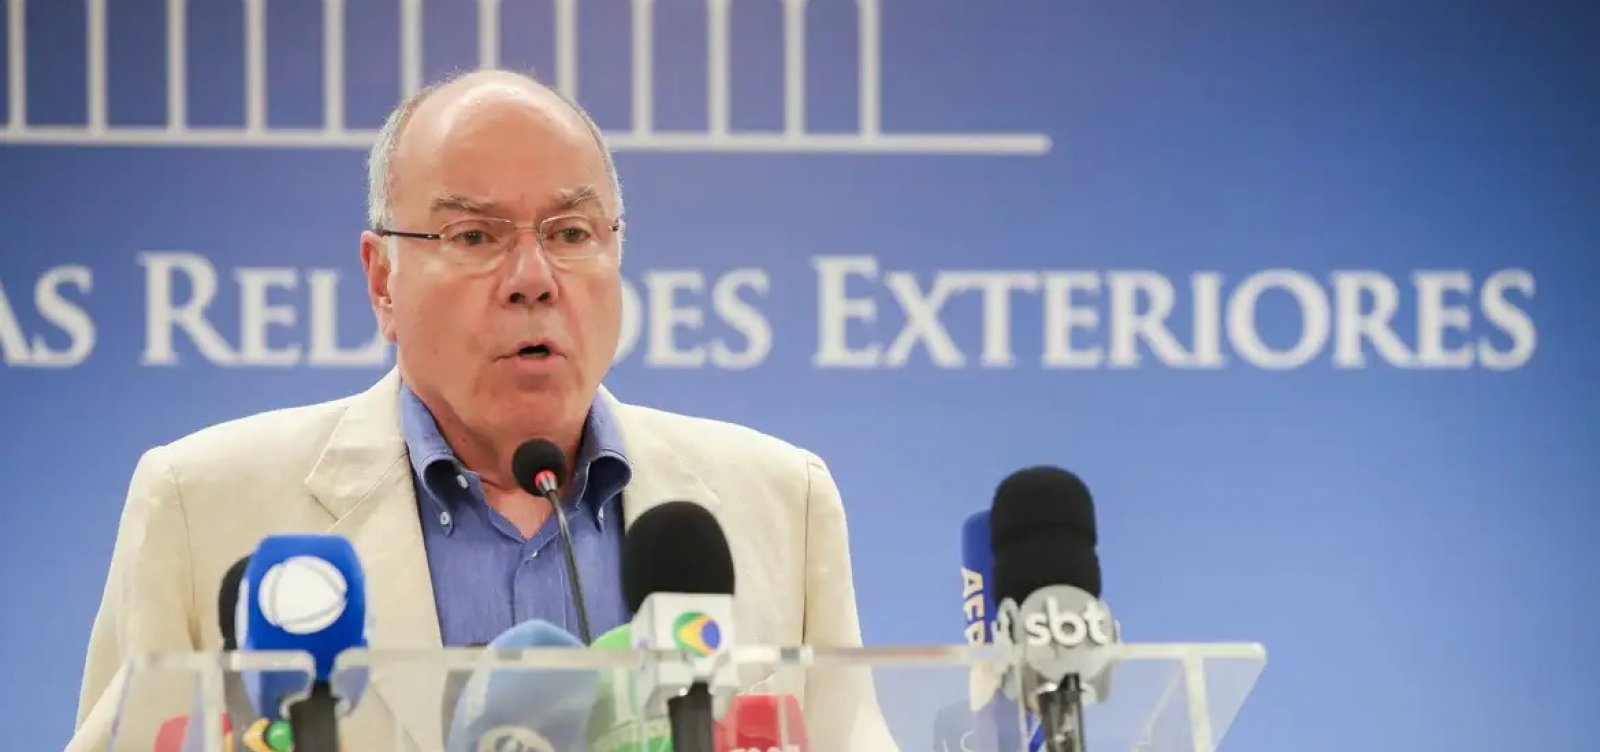 Mauro Vieira irá ao Senado após convite de Renan Calheiros para debater crise diplomática 